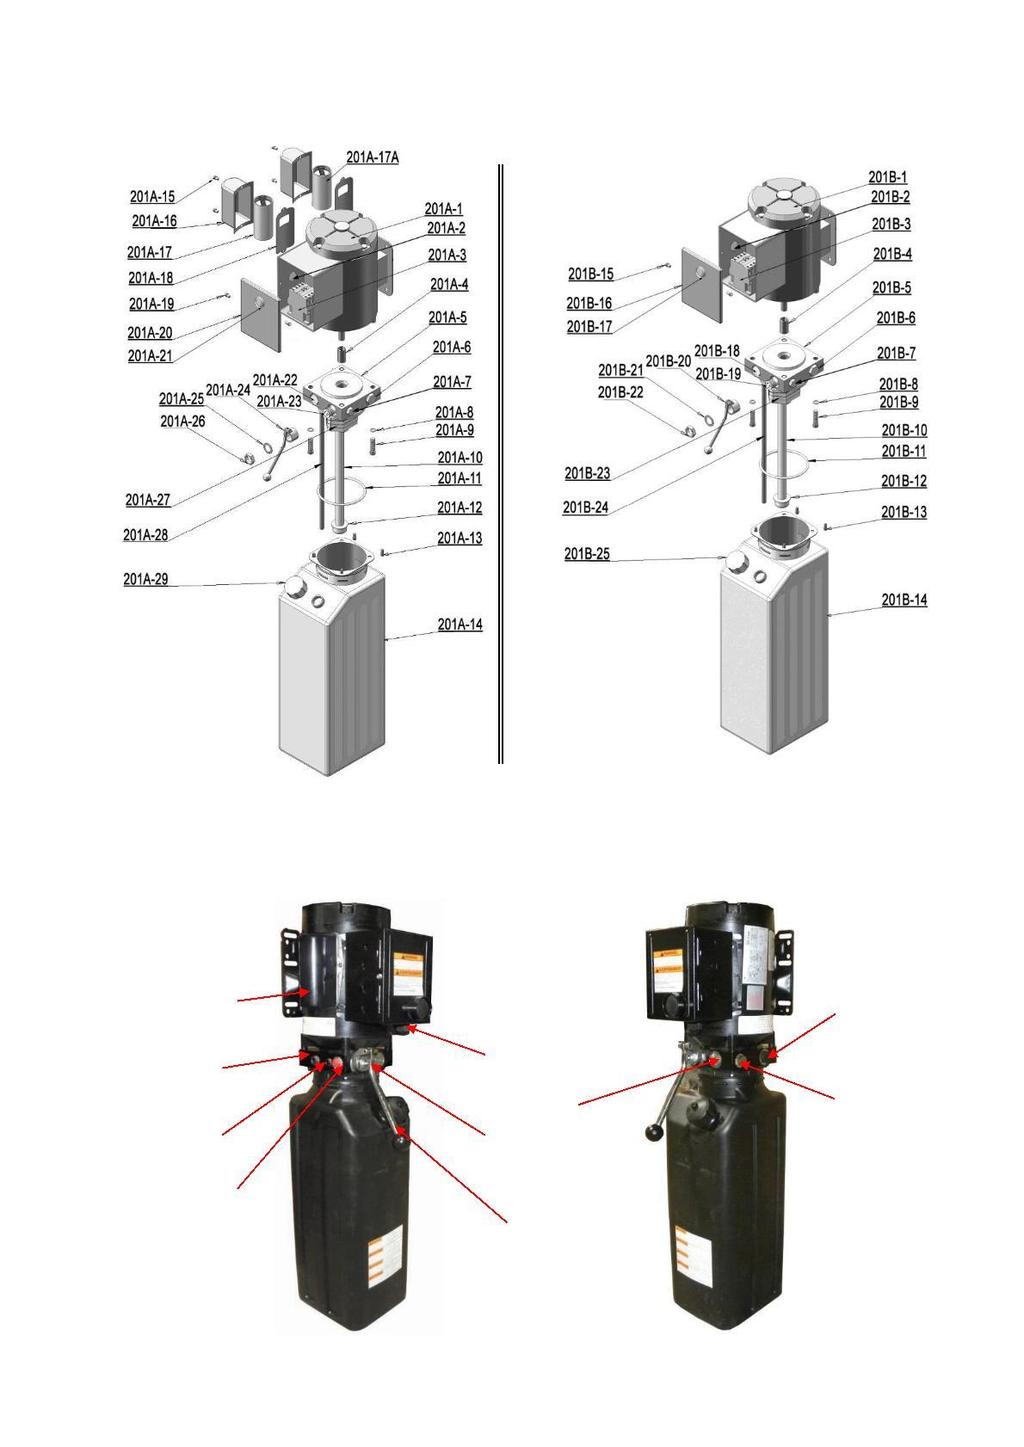 INDYPRO MANUAL POWER UNIT 220V/50HZ/1 phase 380V/50HZ/3 phase Fig. 45 Illustration of hydraulic valve for SPX & Indypro hydraulic power unit a.